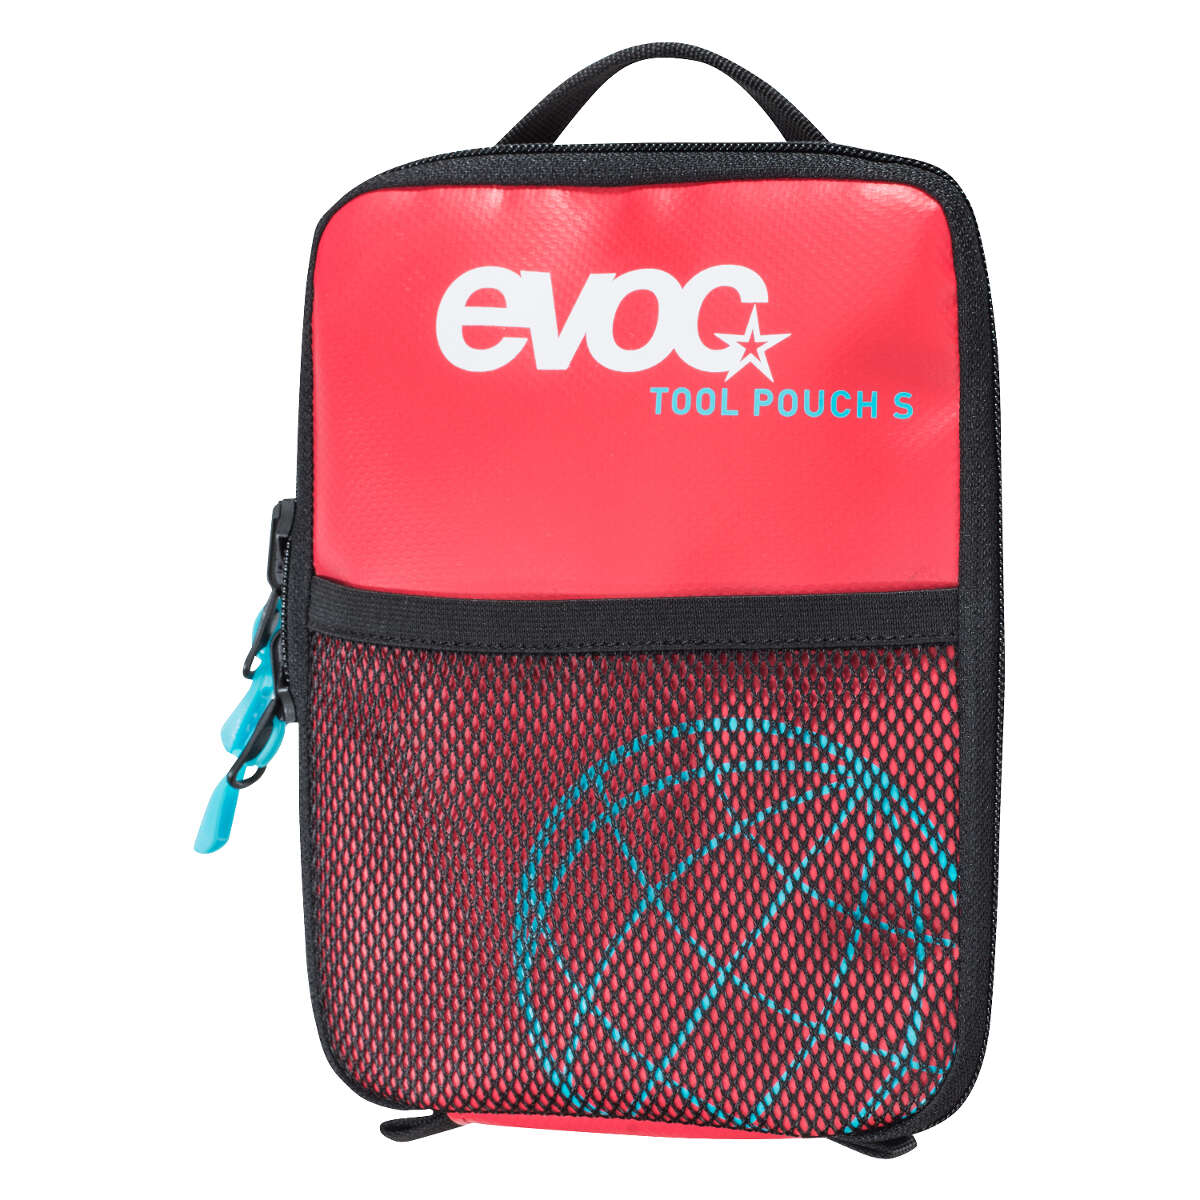 Evoc Werkzeugtasche Tool Pouch 0.6L - Rot